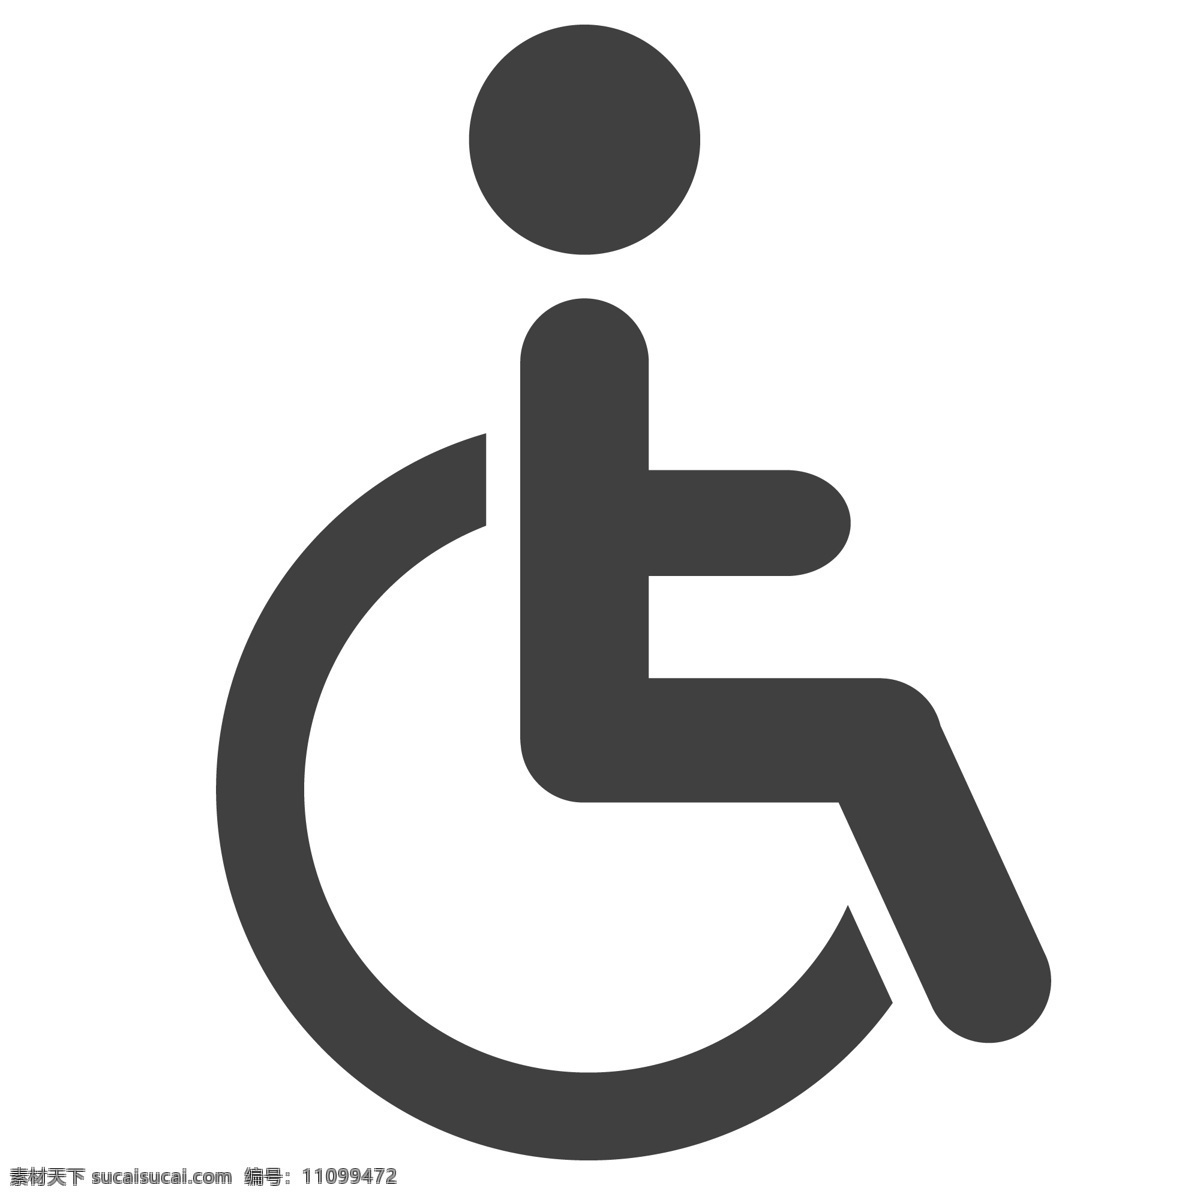 残疾人 图标 轮椅 关爱残疾人 生活图标 卡通图标 黑色的图标 手机图标 智能图标设计